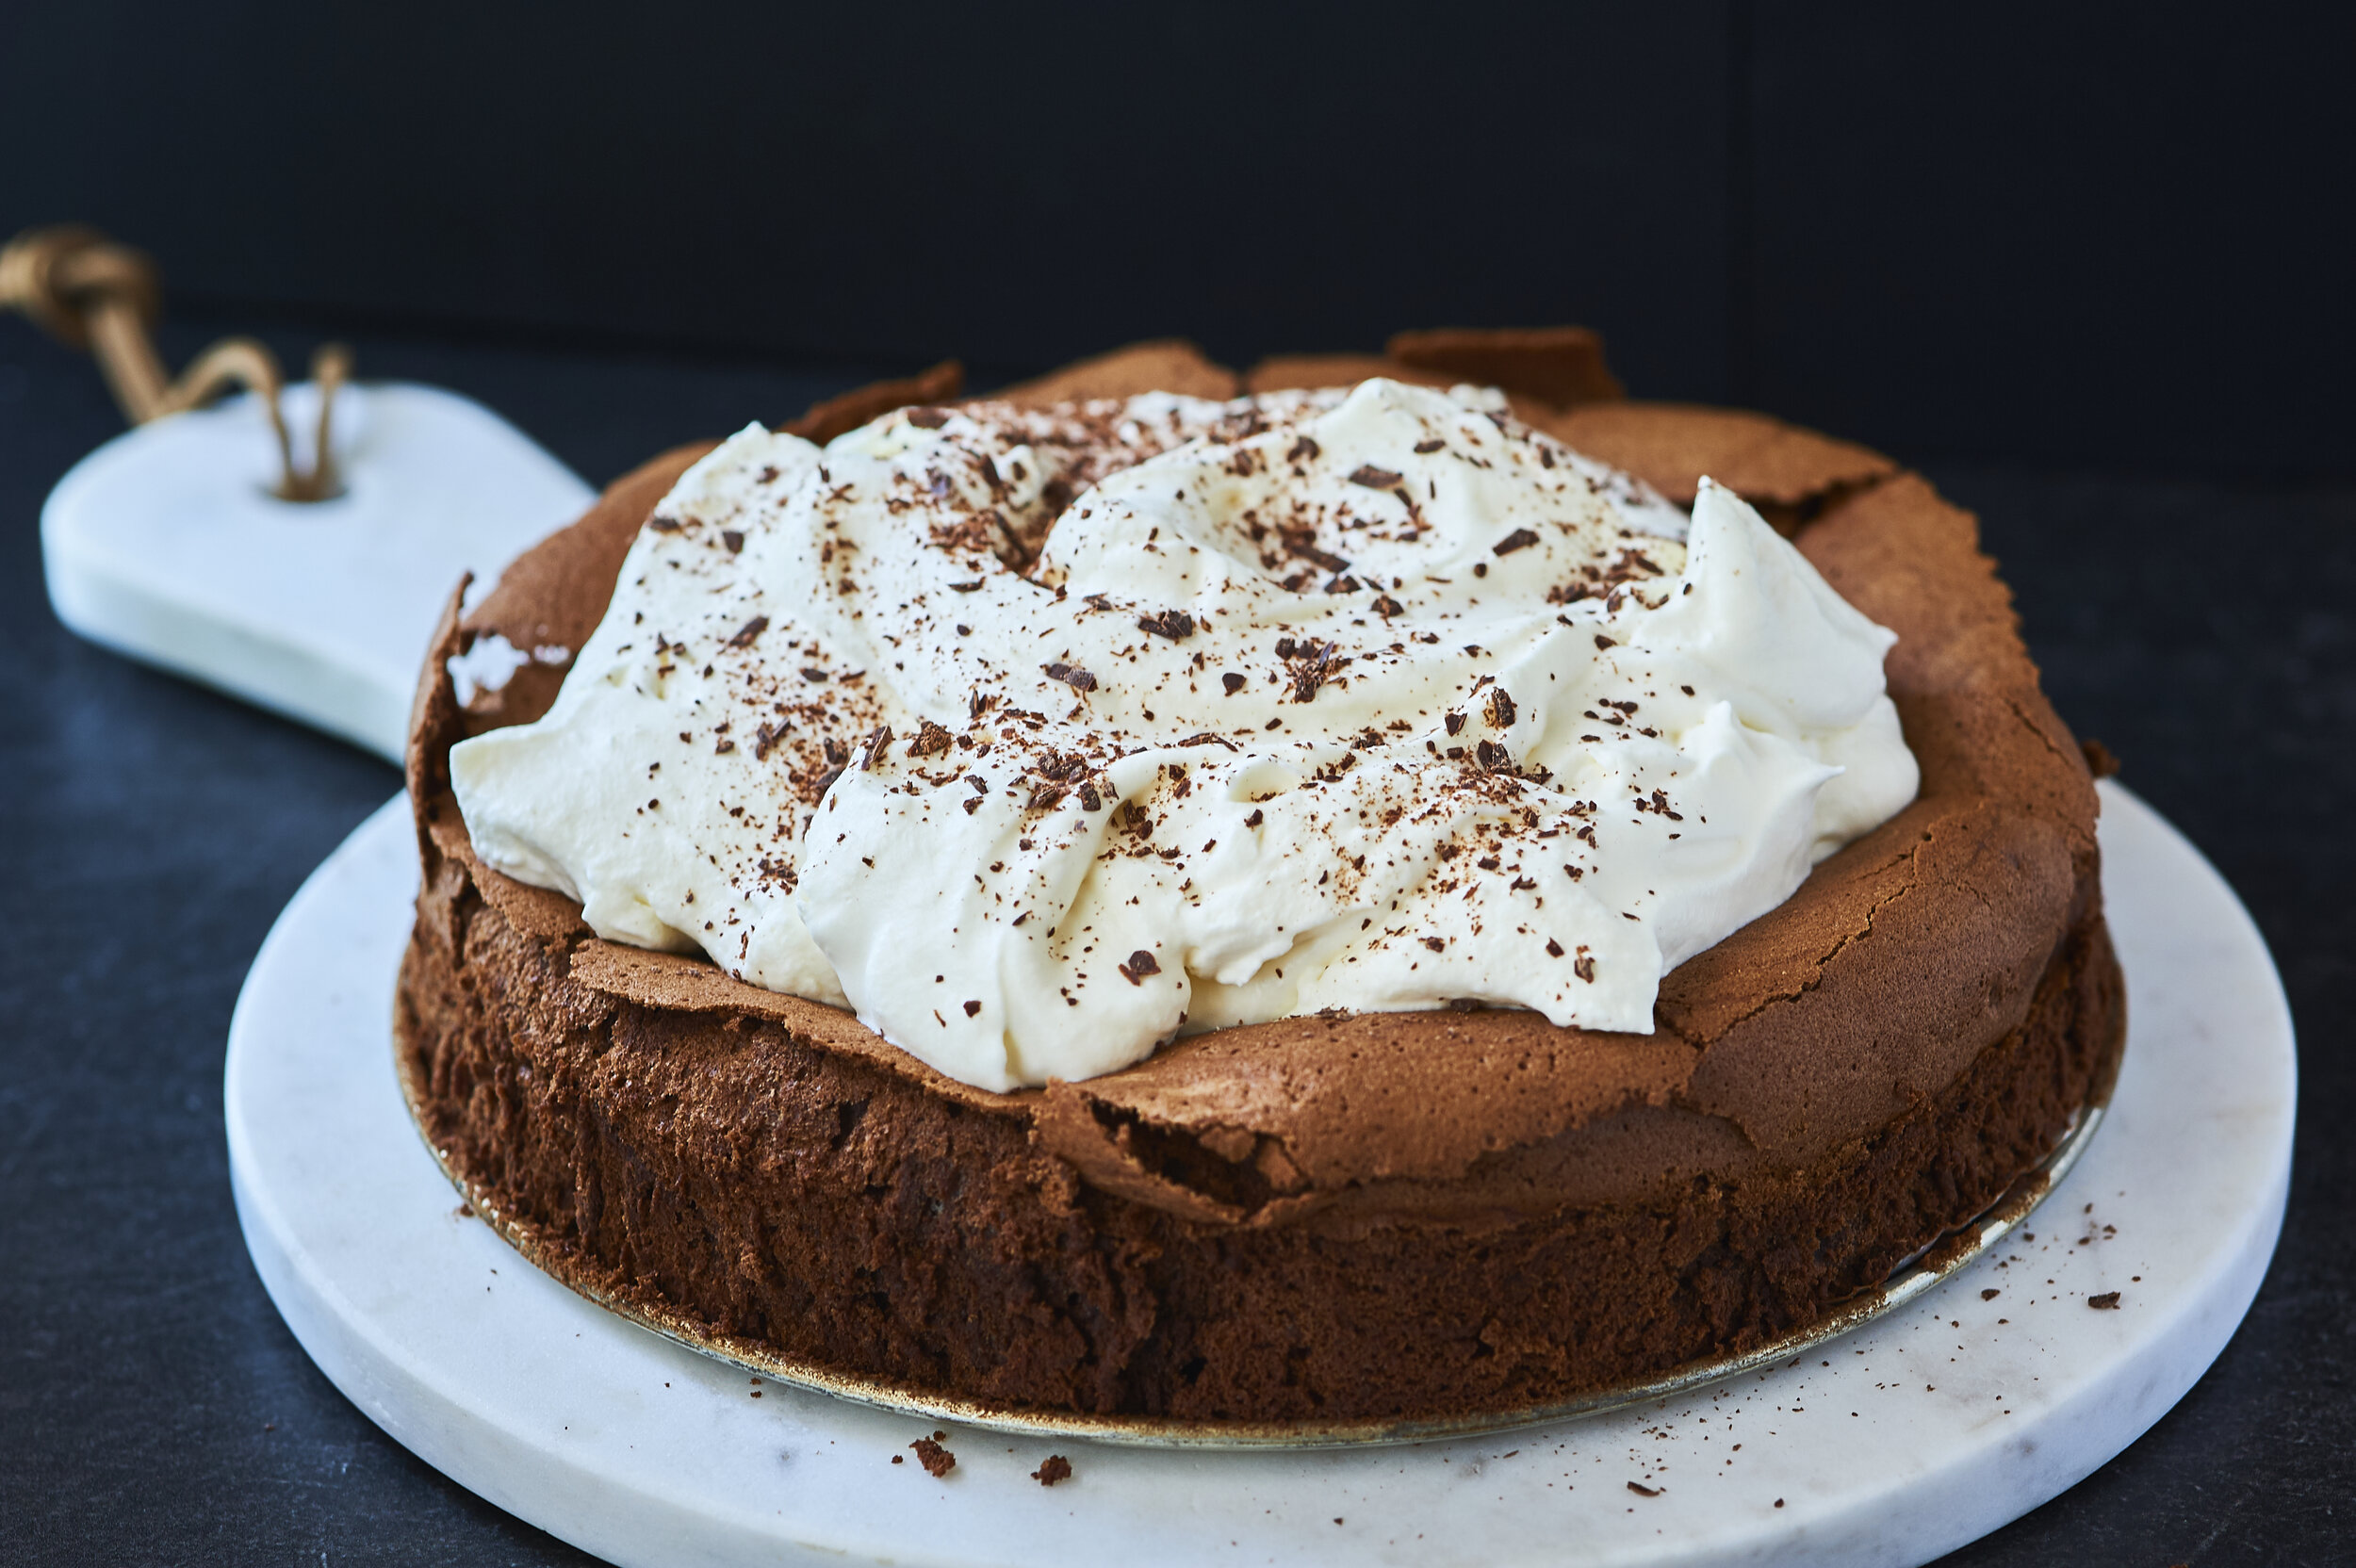 Dairy-free chocolate birthday cake recipe | Chocolate recipes